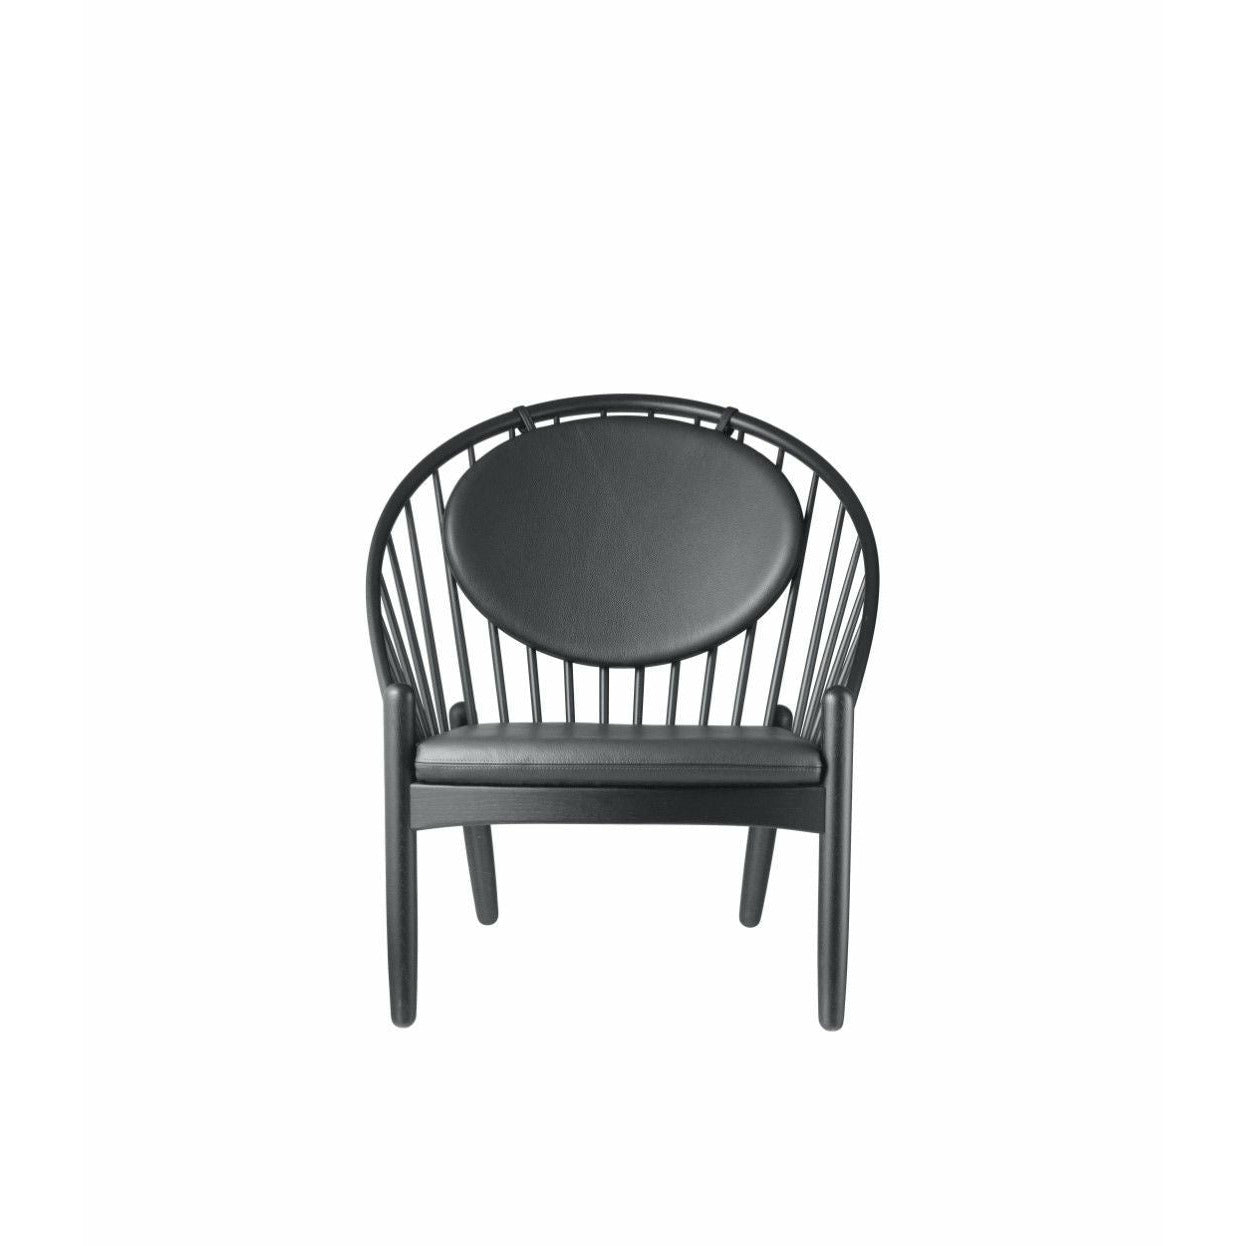 Fdb Møbler J166 Jørna Chair, Black/Black